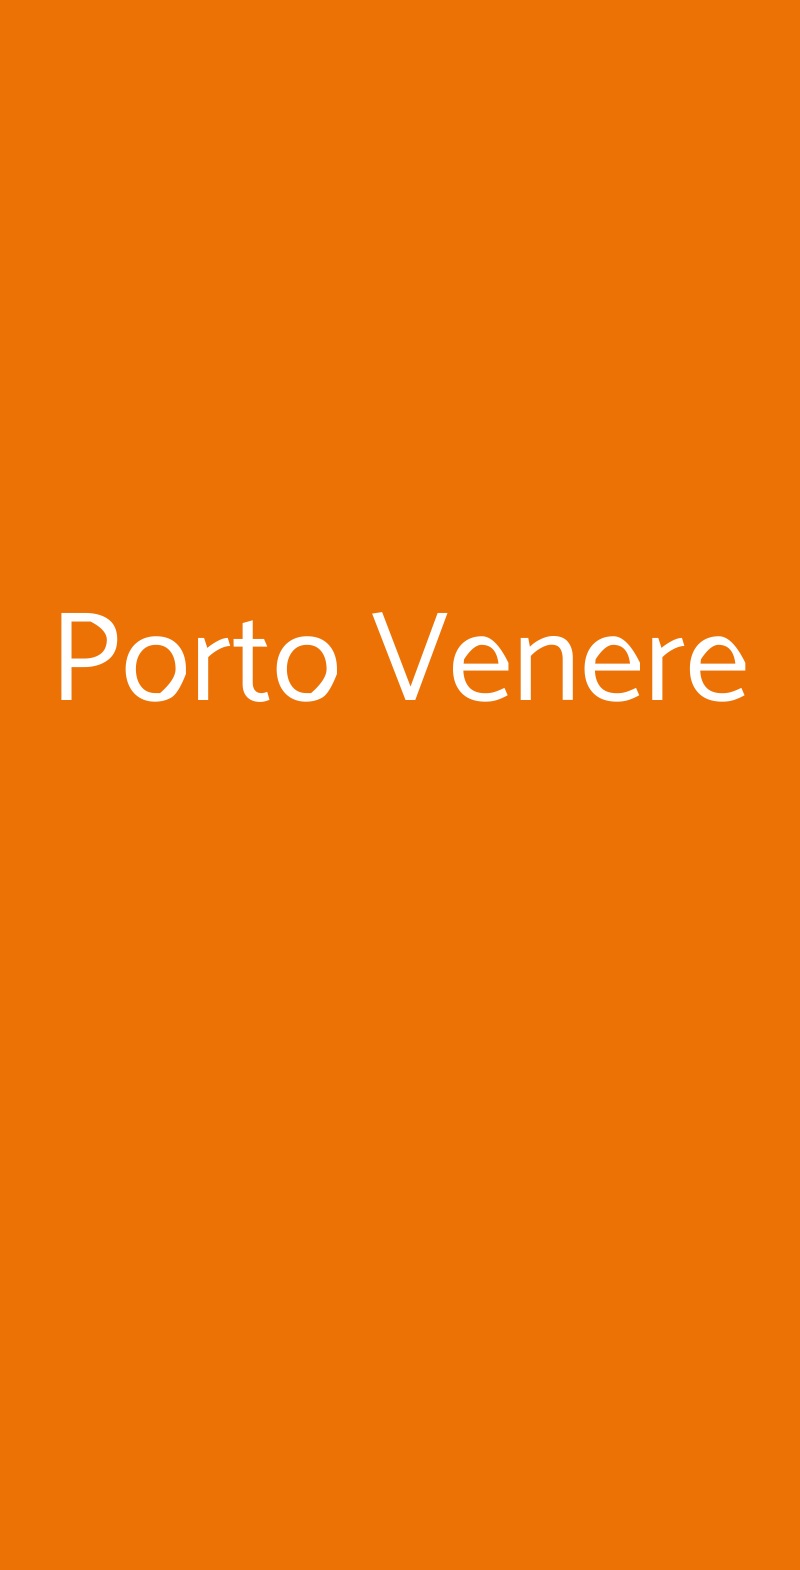 Porto Venere Milano menù 1 pagina